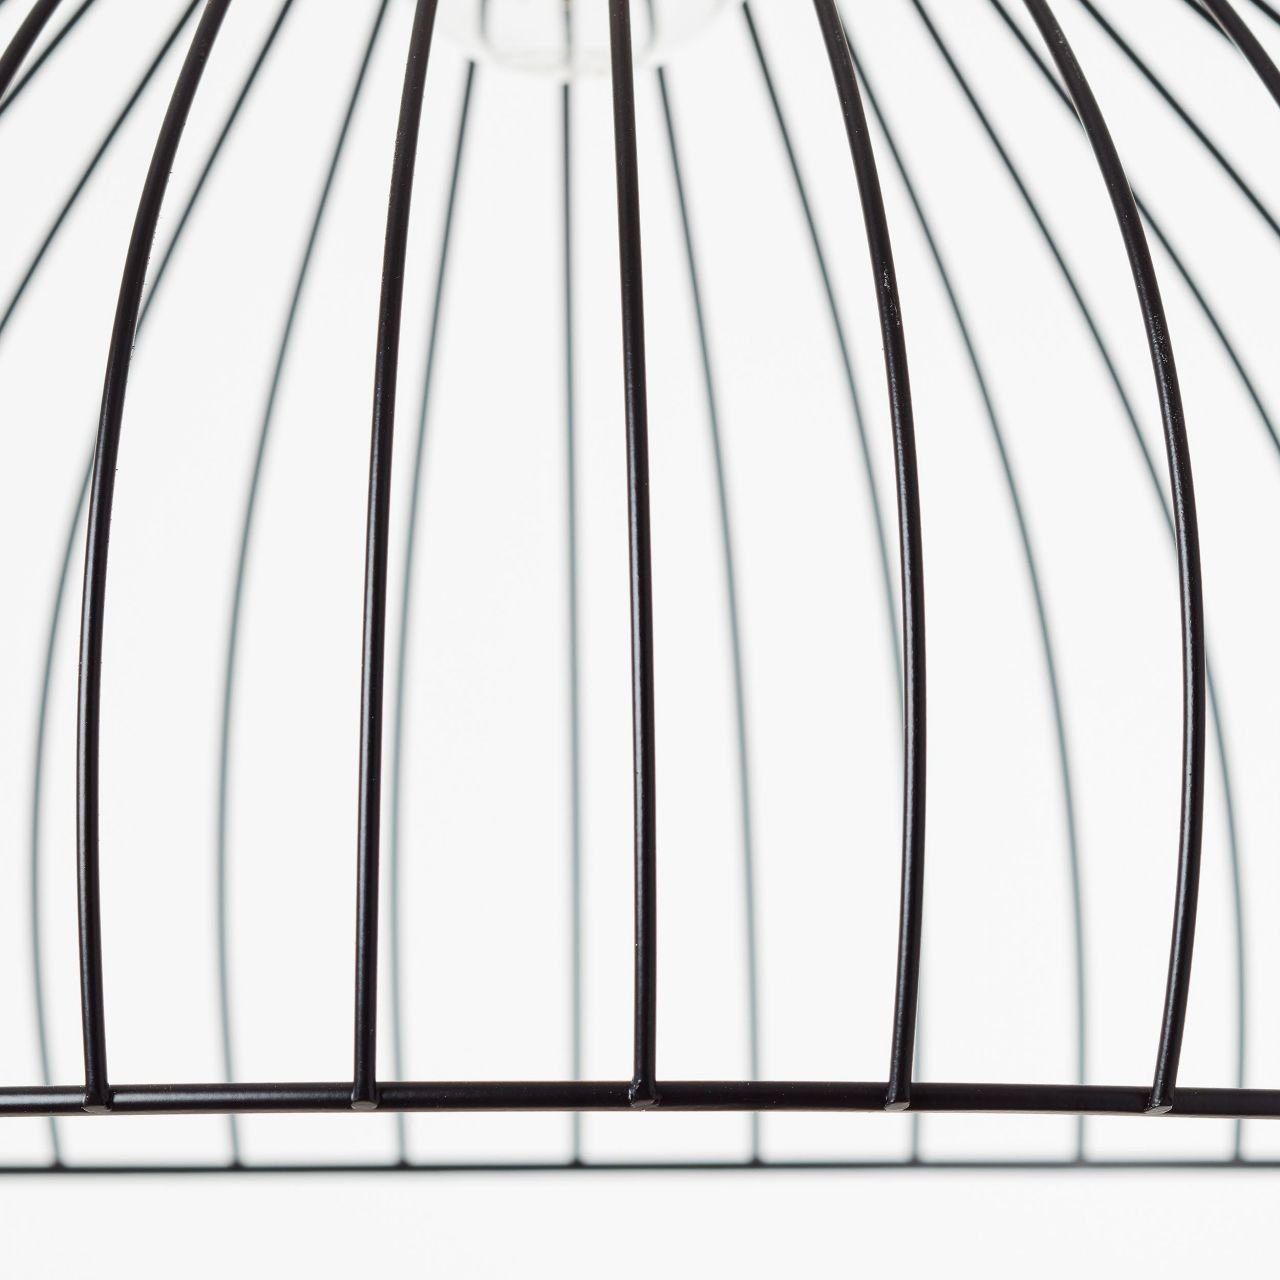 Brilliant Pendelleuchte matt, Blacky Blacky, A60, E27, schwarz 40W, 40cm 1x Lampe, Pendelleuchte Kabel